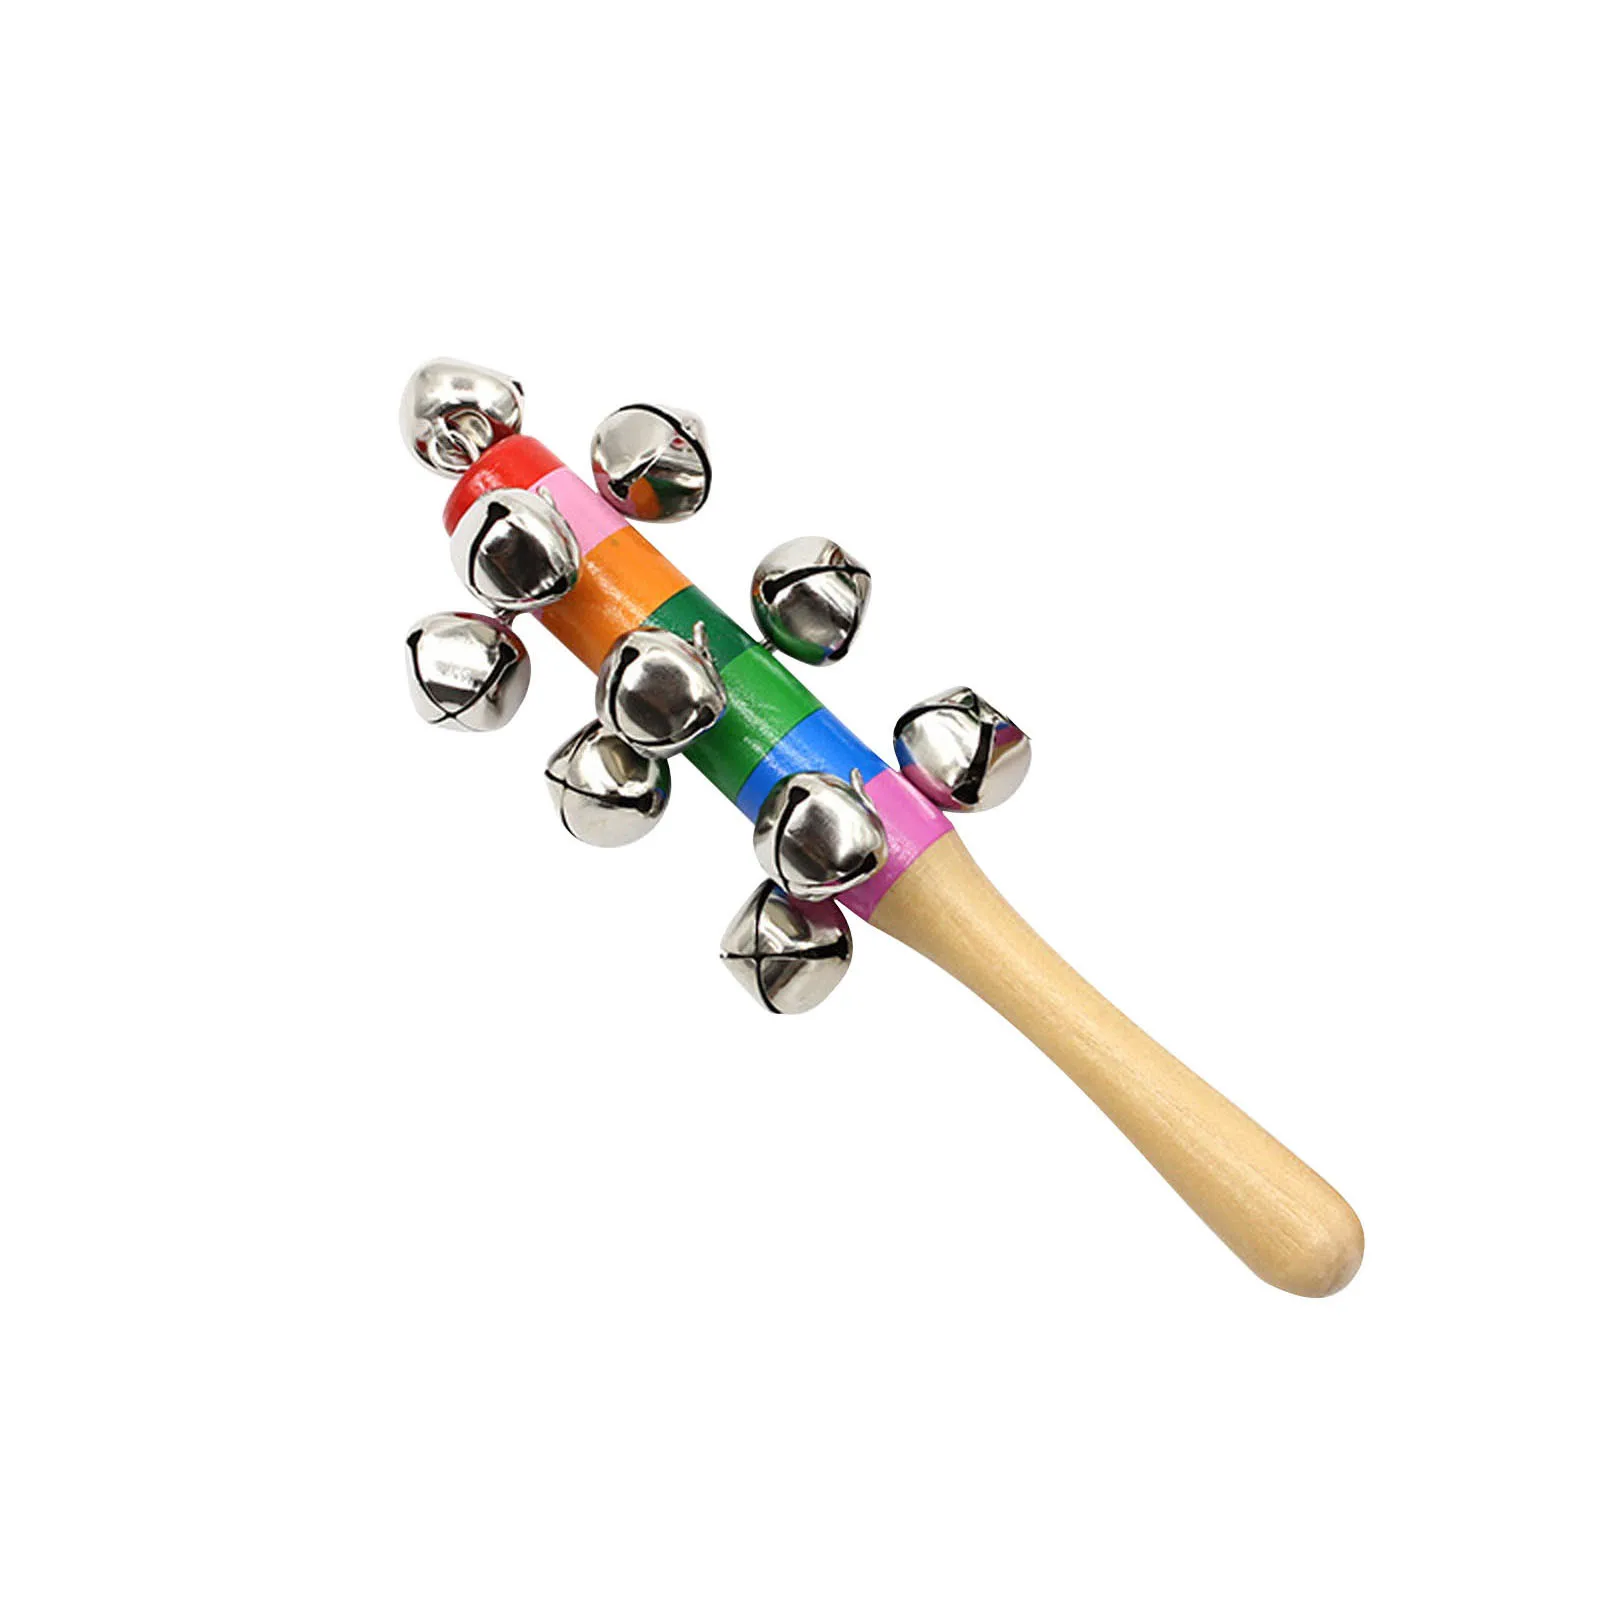 

Sonagli colorati in legno arcobaleno bambino educazione precoce sonaglio educativo giocattolo bambola per bambini giocattoli per